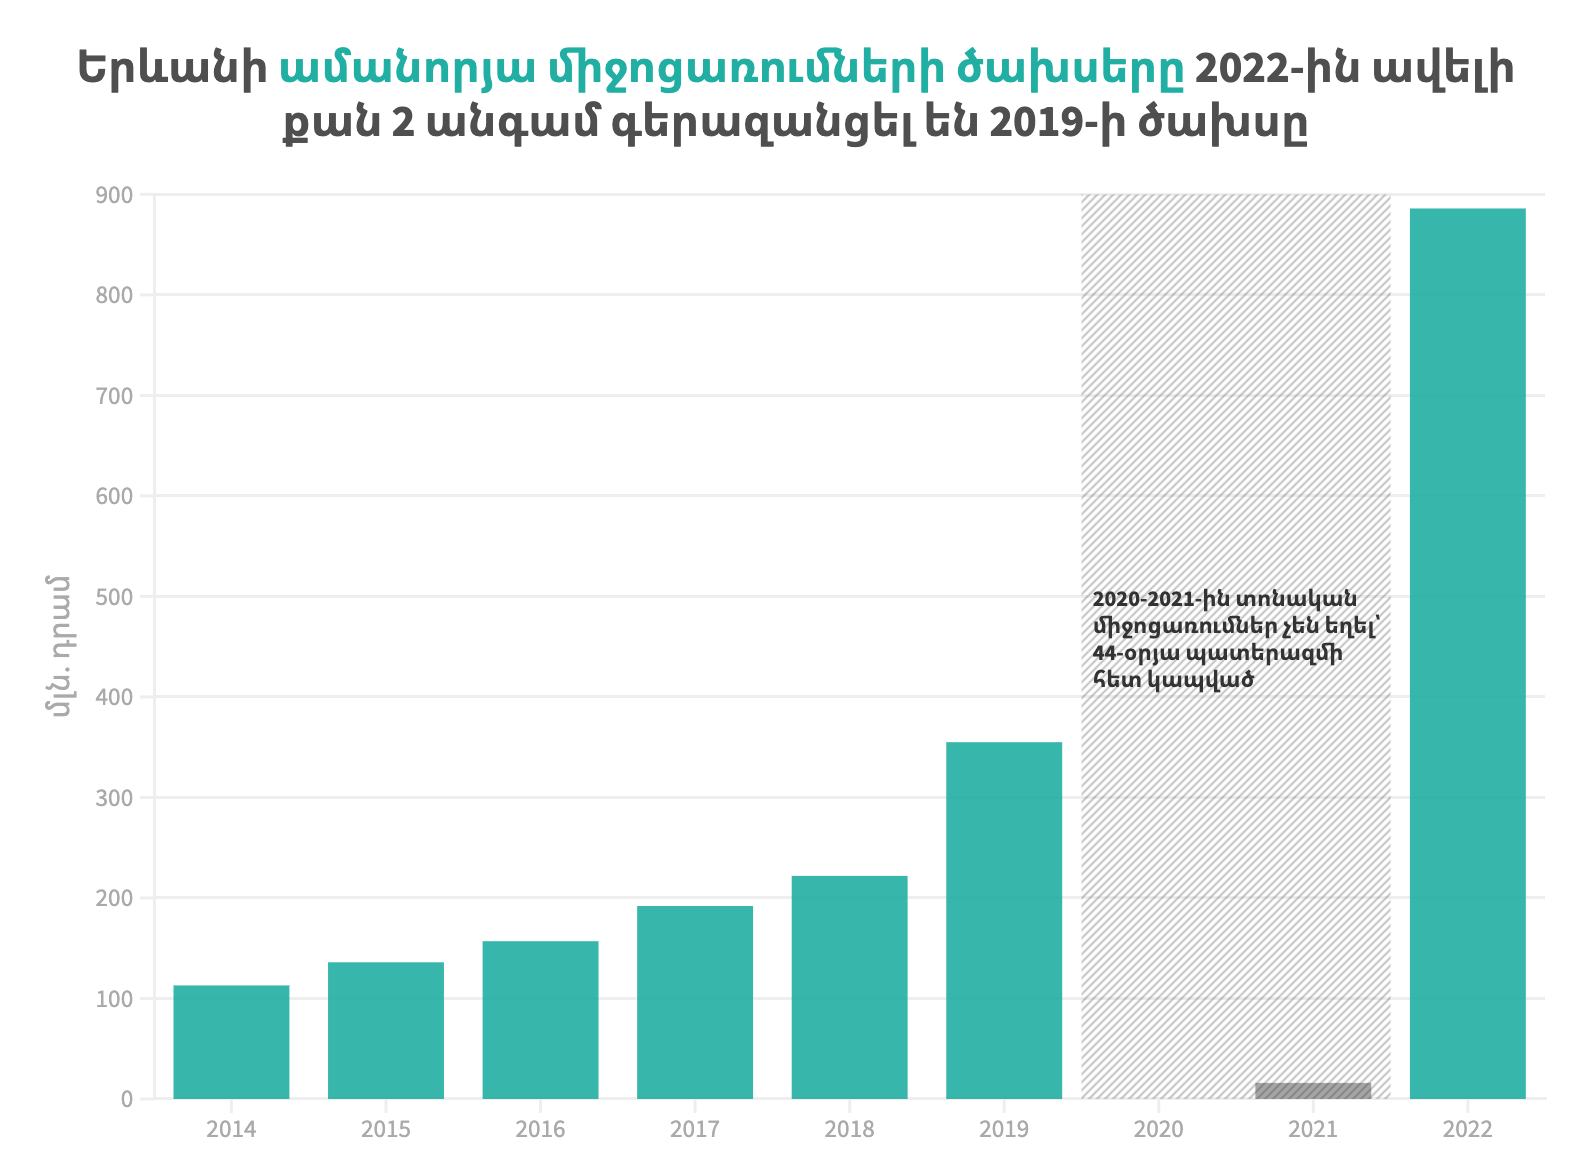 Երևան քաղաքի ամանորյա տոնական միջոցառումների ծախսերը ըստ տարիների